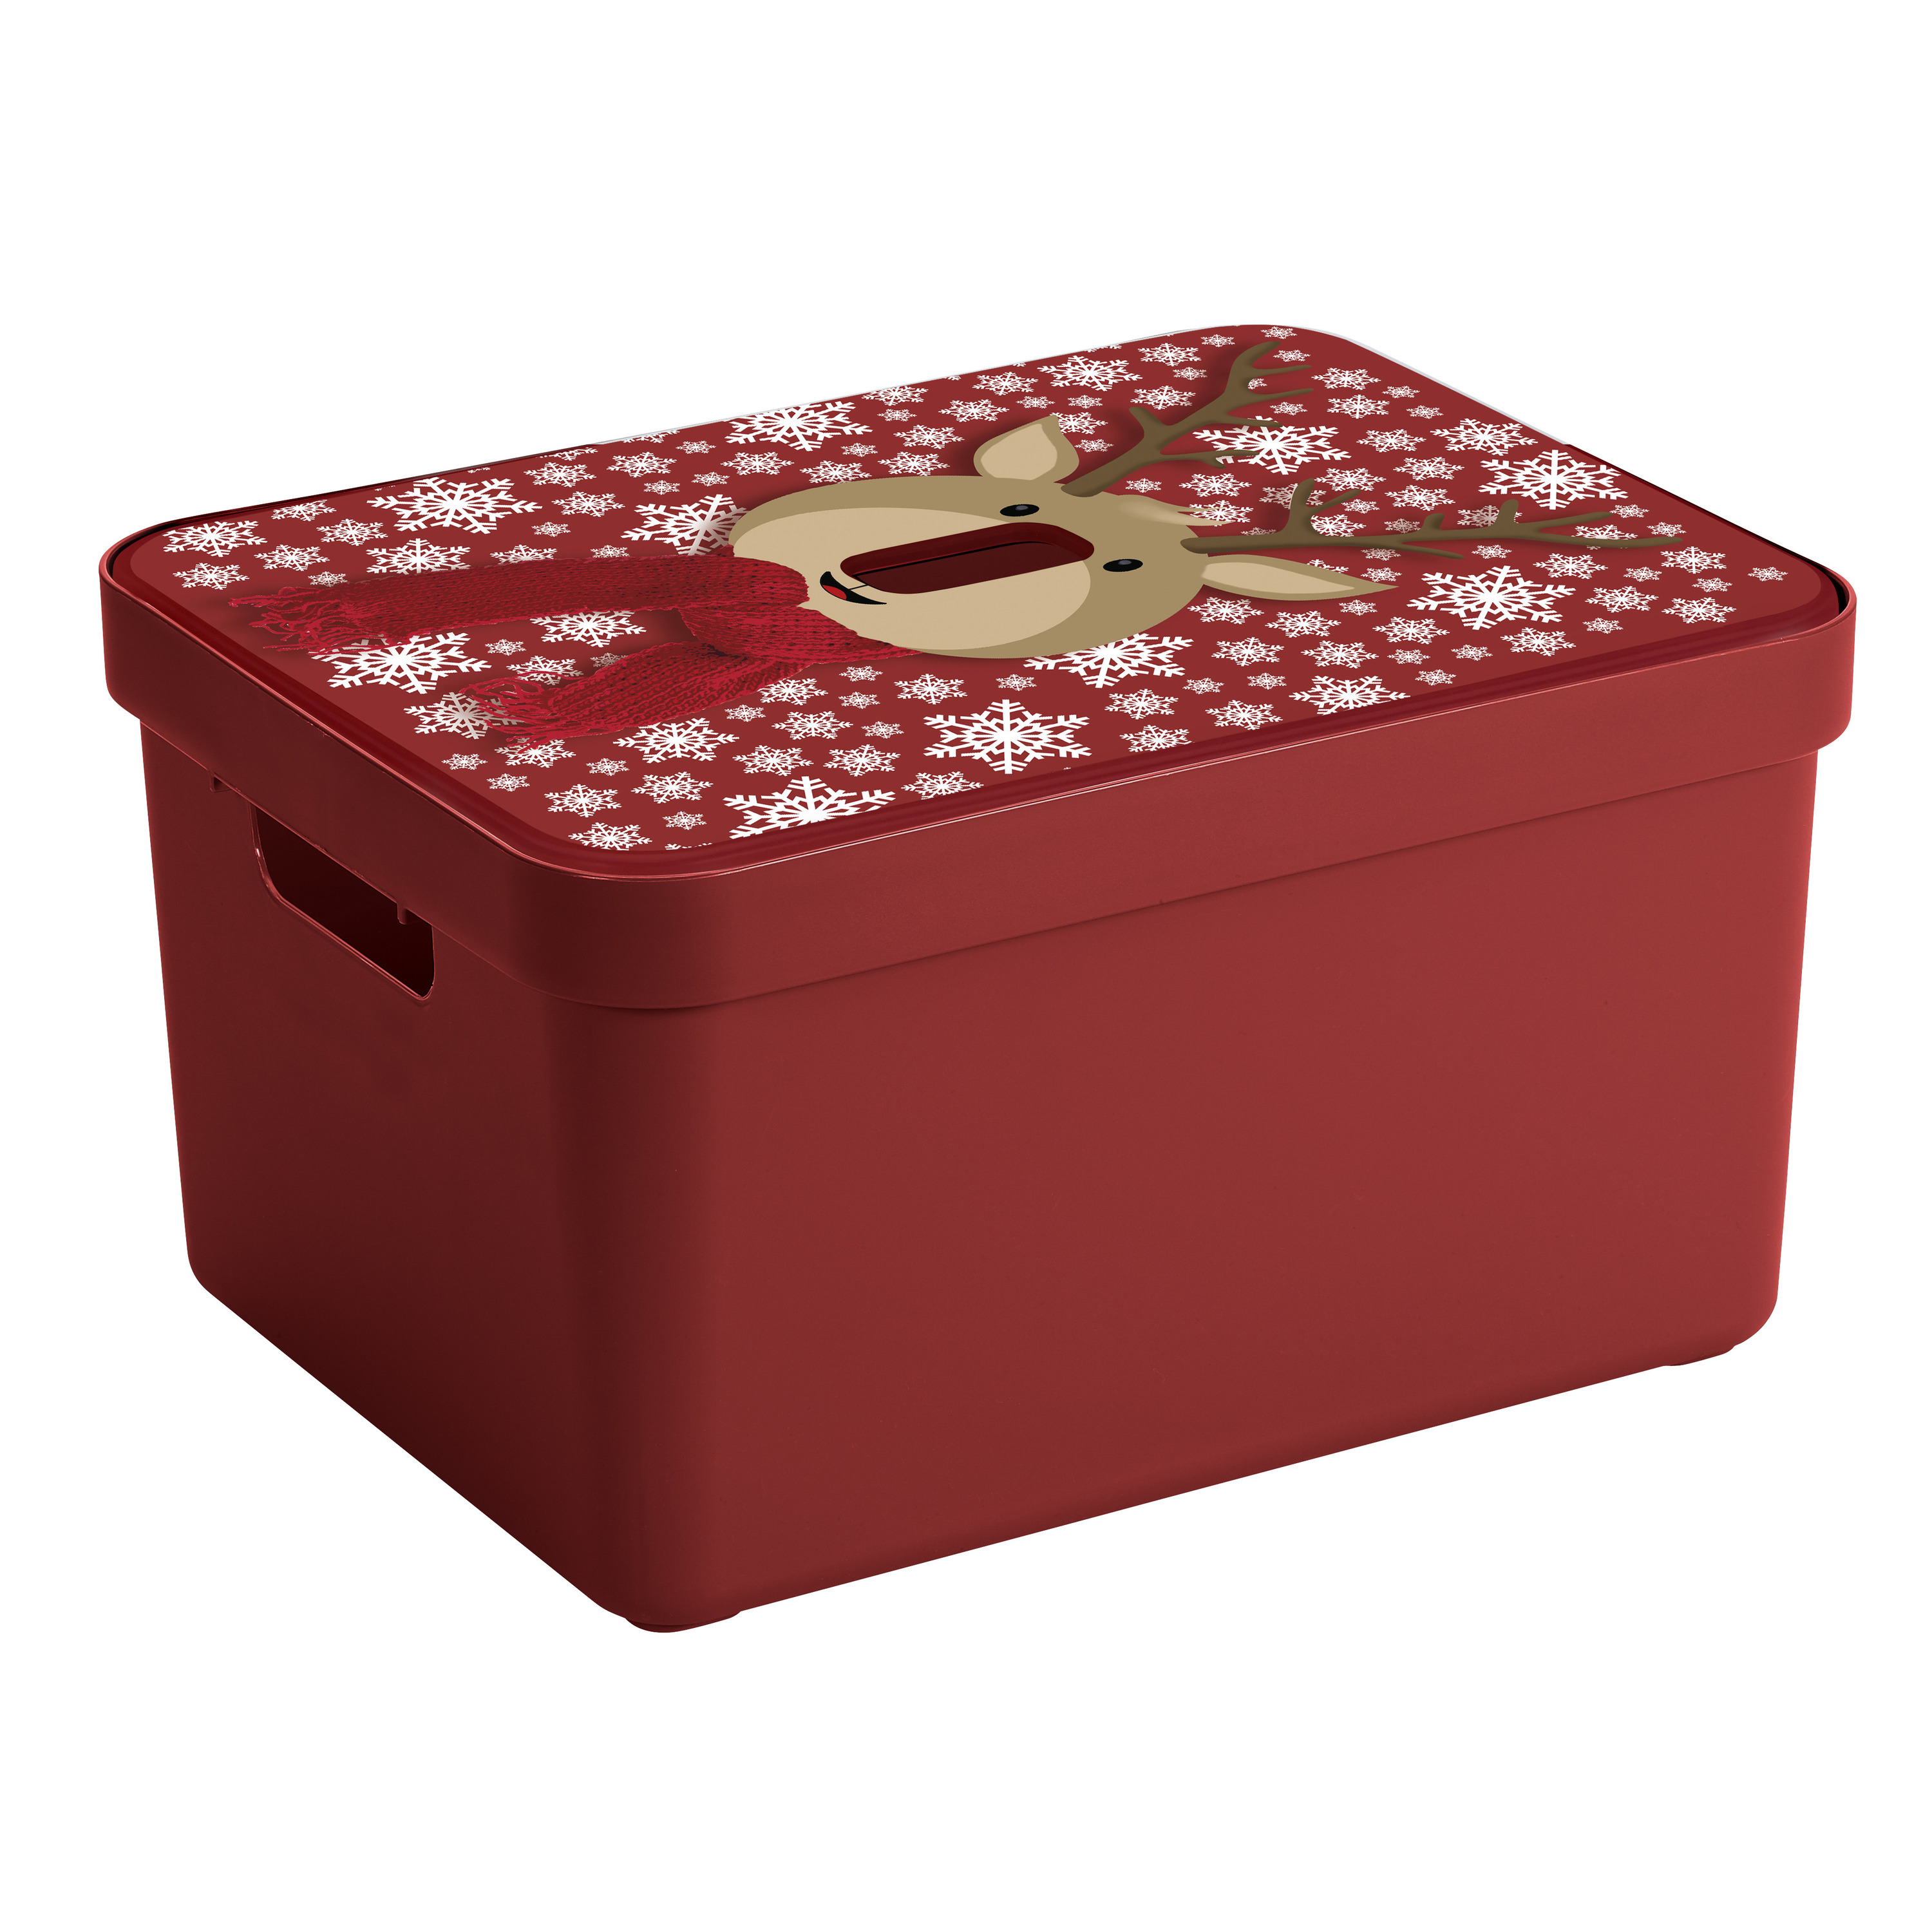 Kerstballen/kerstversiering opruimen opbergbox met rendieren print